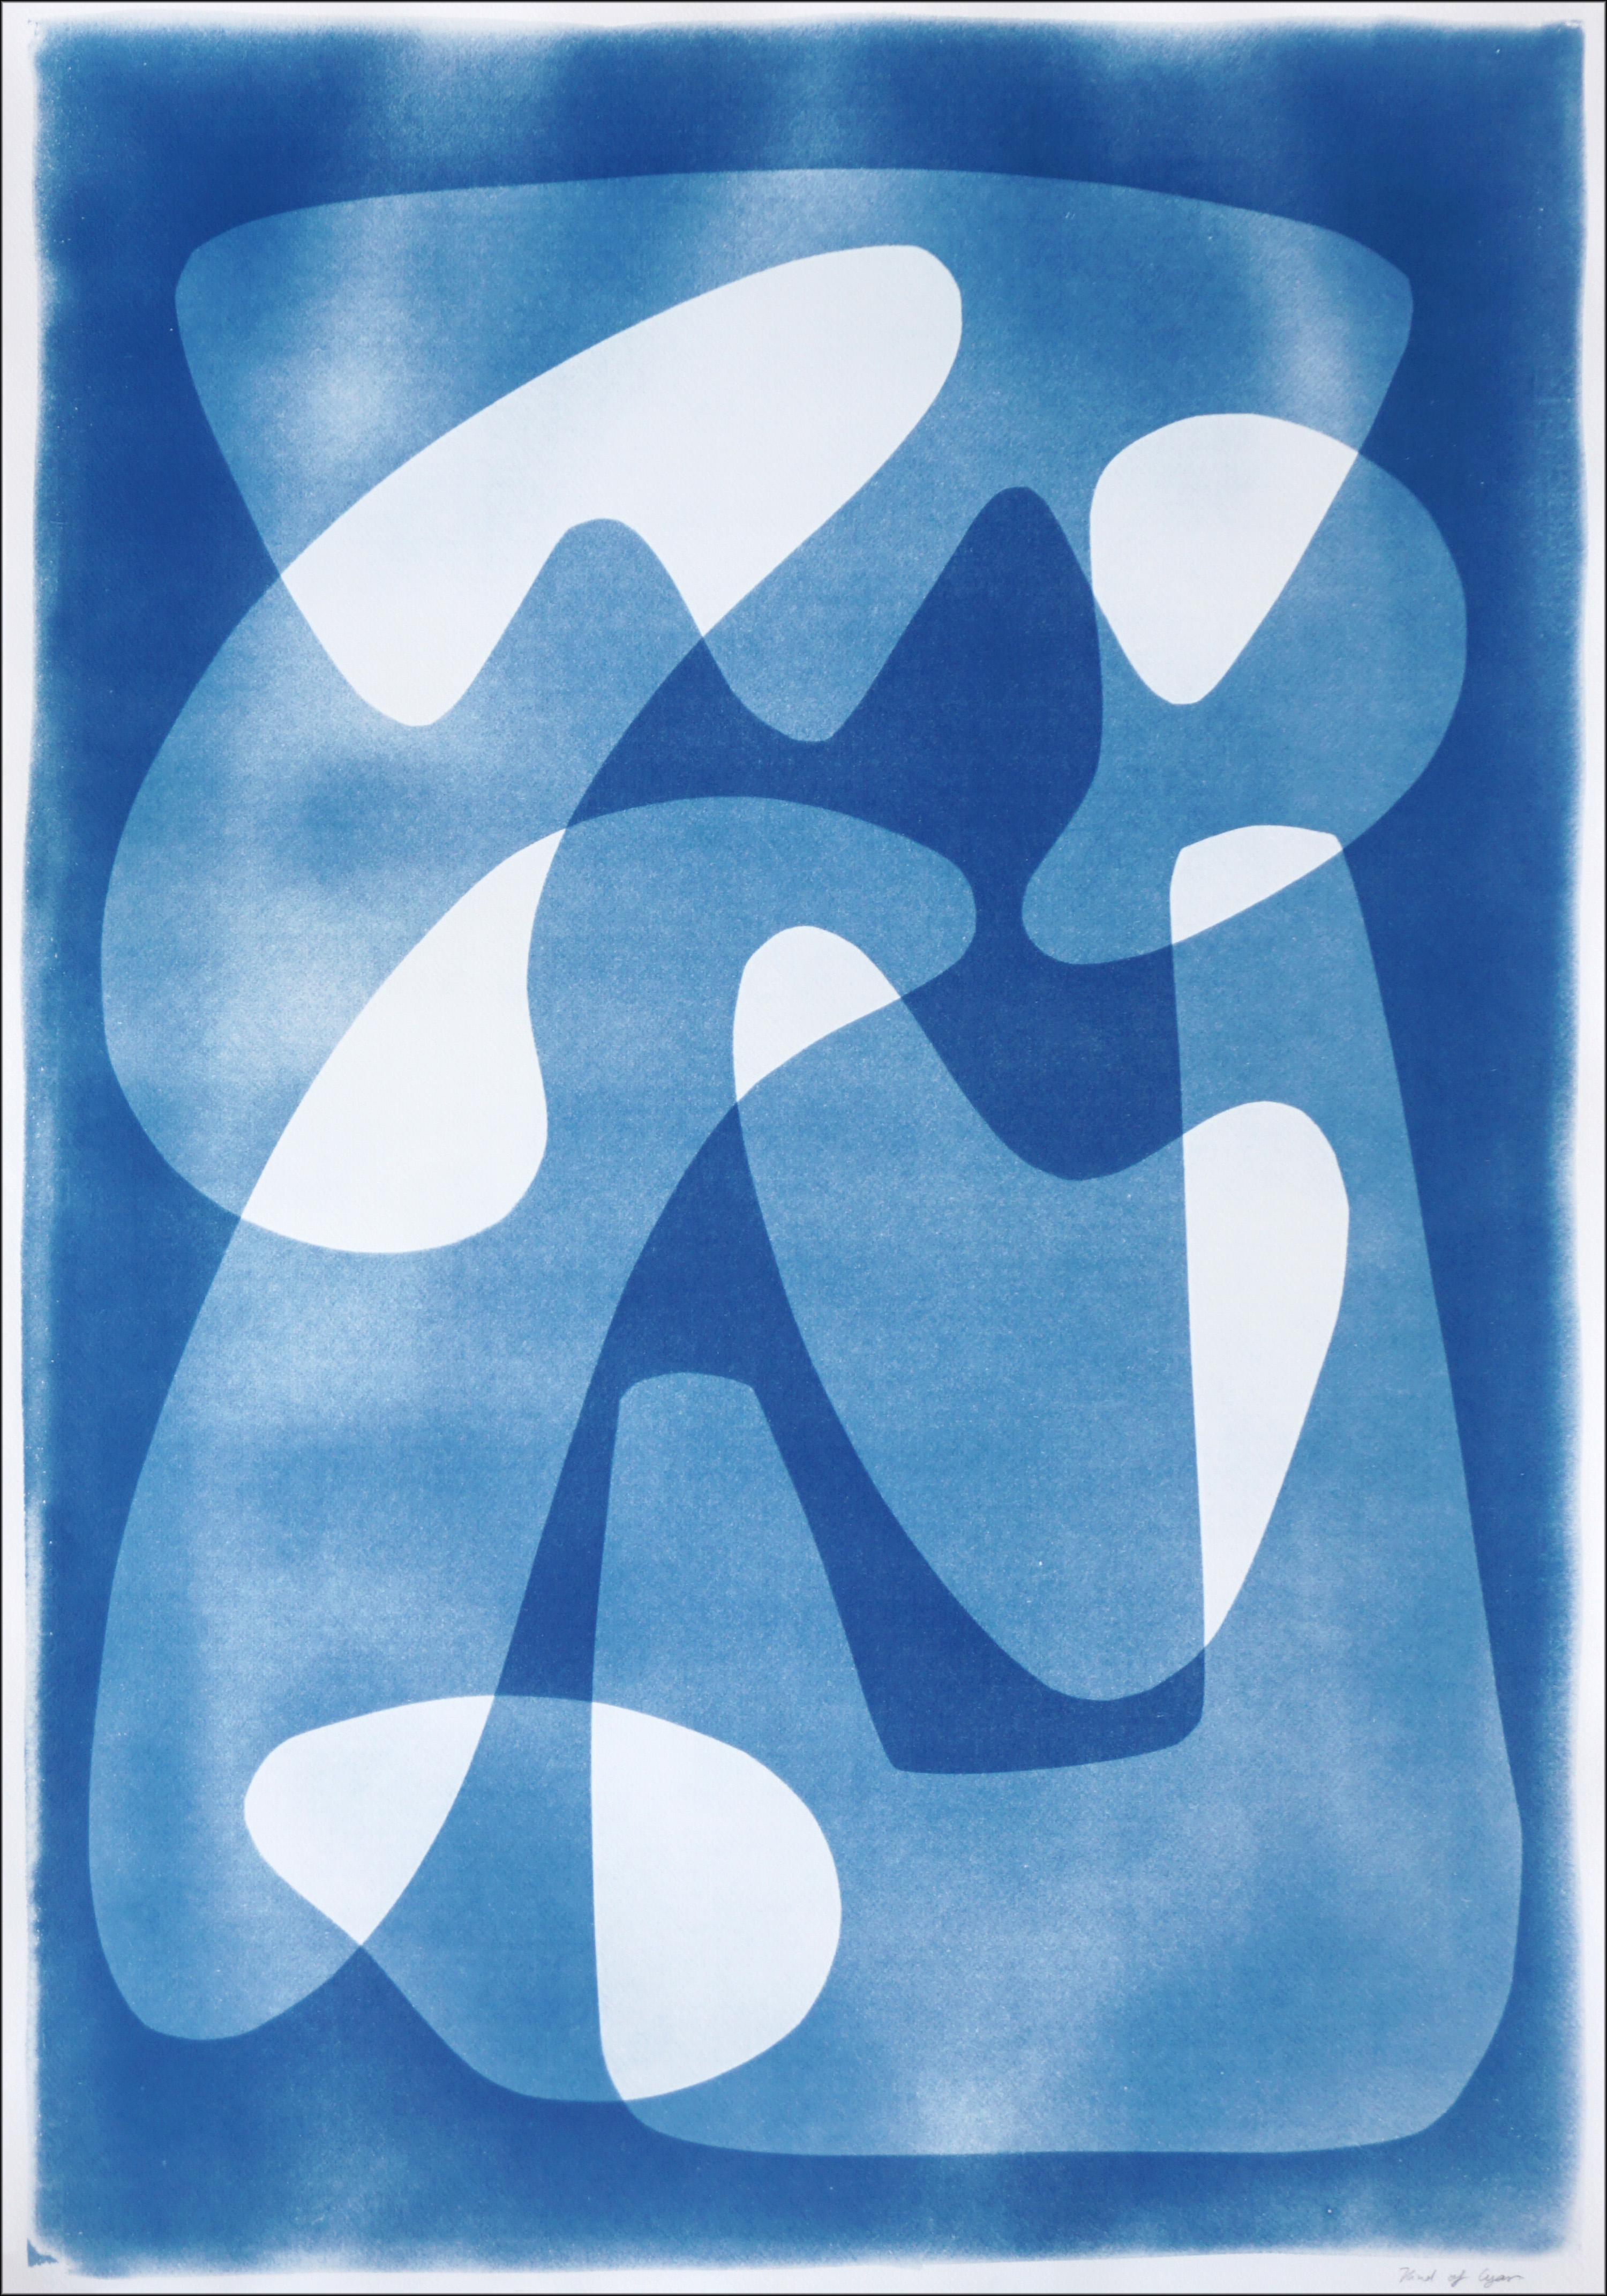 Kind of Cyan Abstract Print – Weißes und blaues Muster von Paletten, moderne, schwebende Formen, einzigartige Cyanotyp 